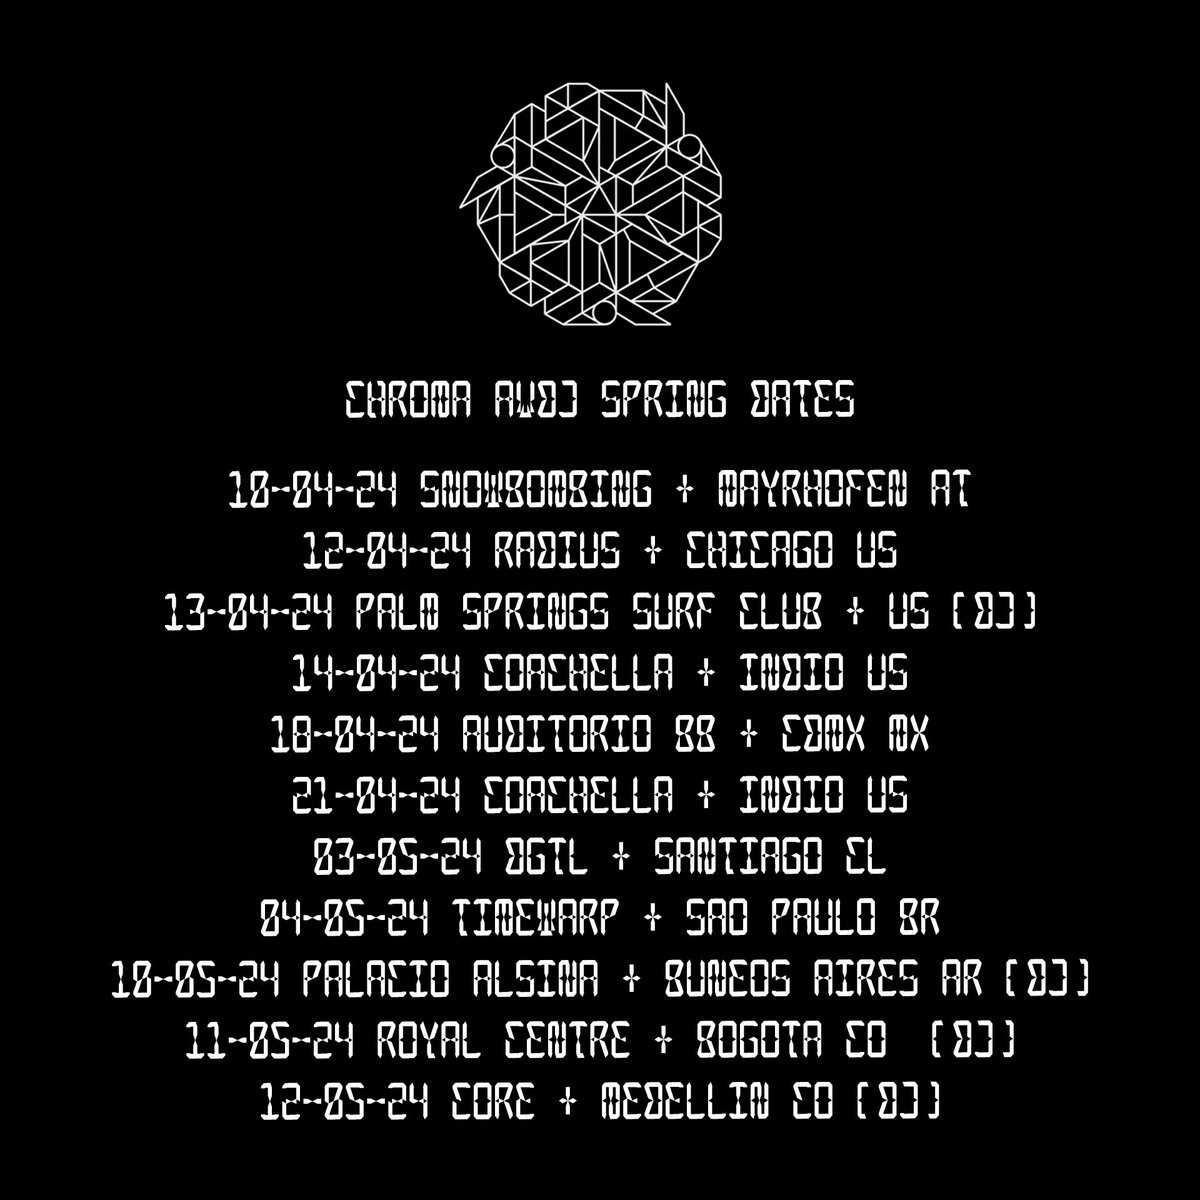 ⚡️SPRING CHROMA DATES ⚡️bicepmusic.com/tour